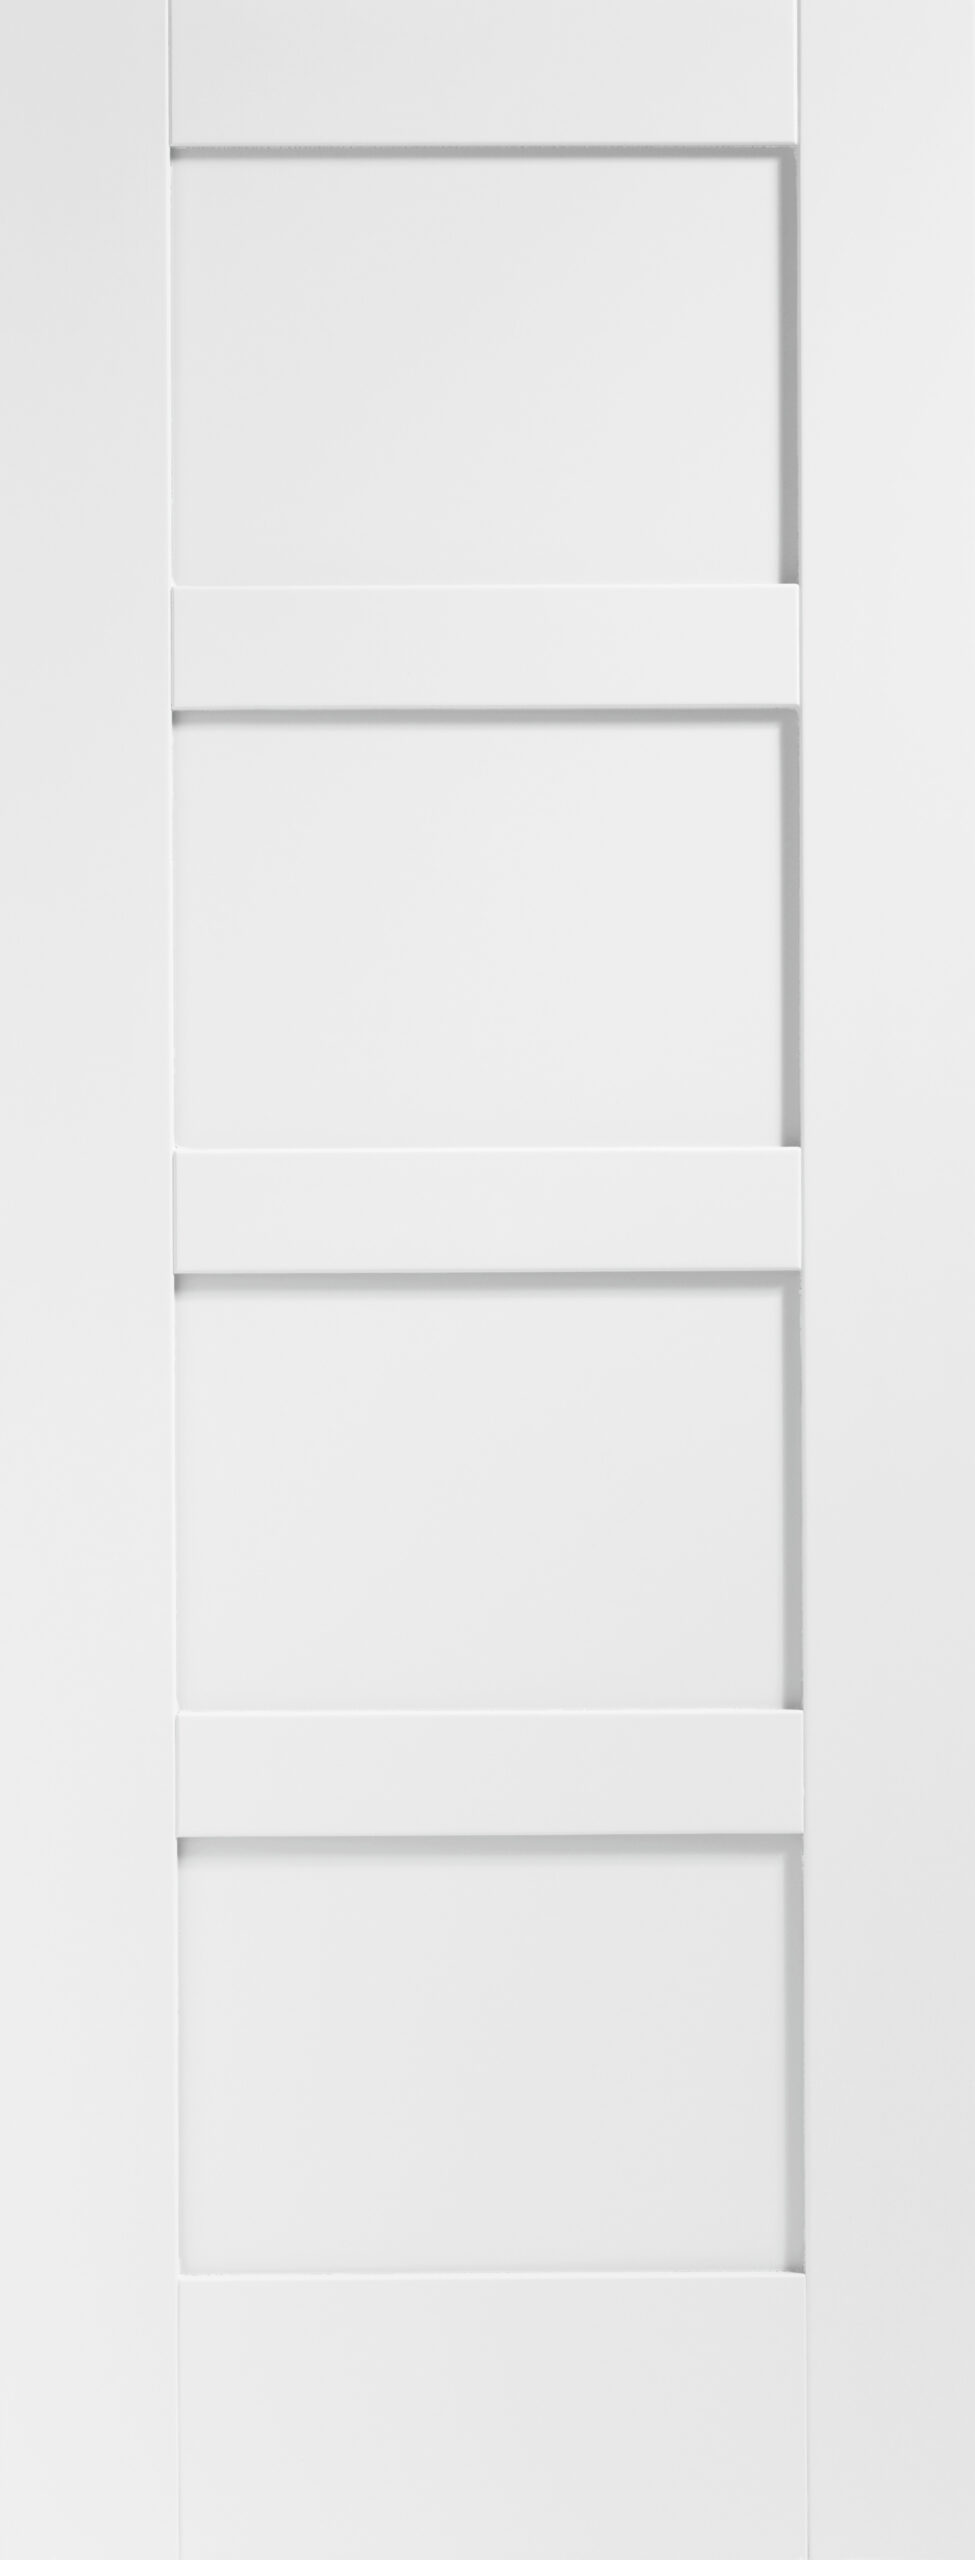 Shaker 4 Panel Internal White Primed Door – White Primed, 2040 x 626 x 40 mm